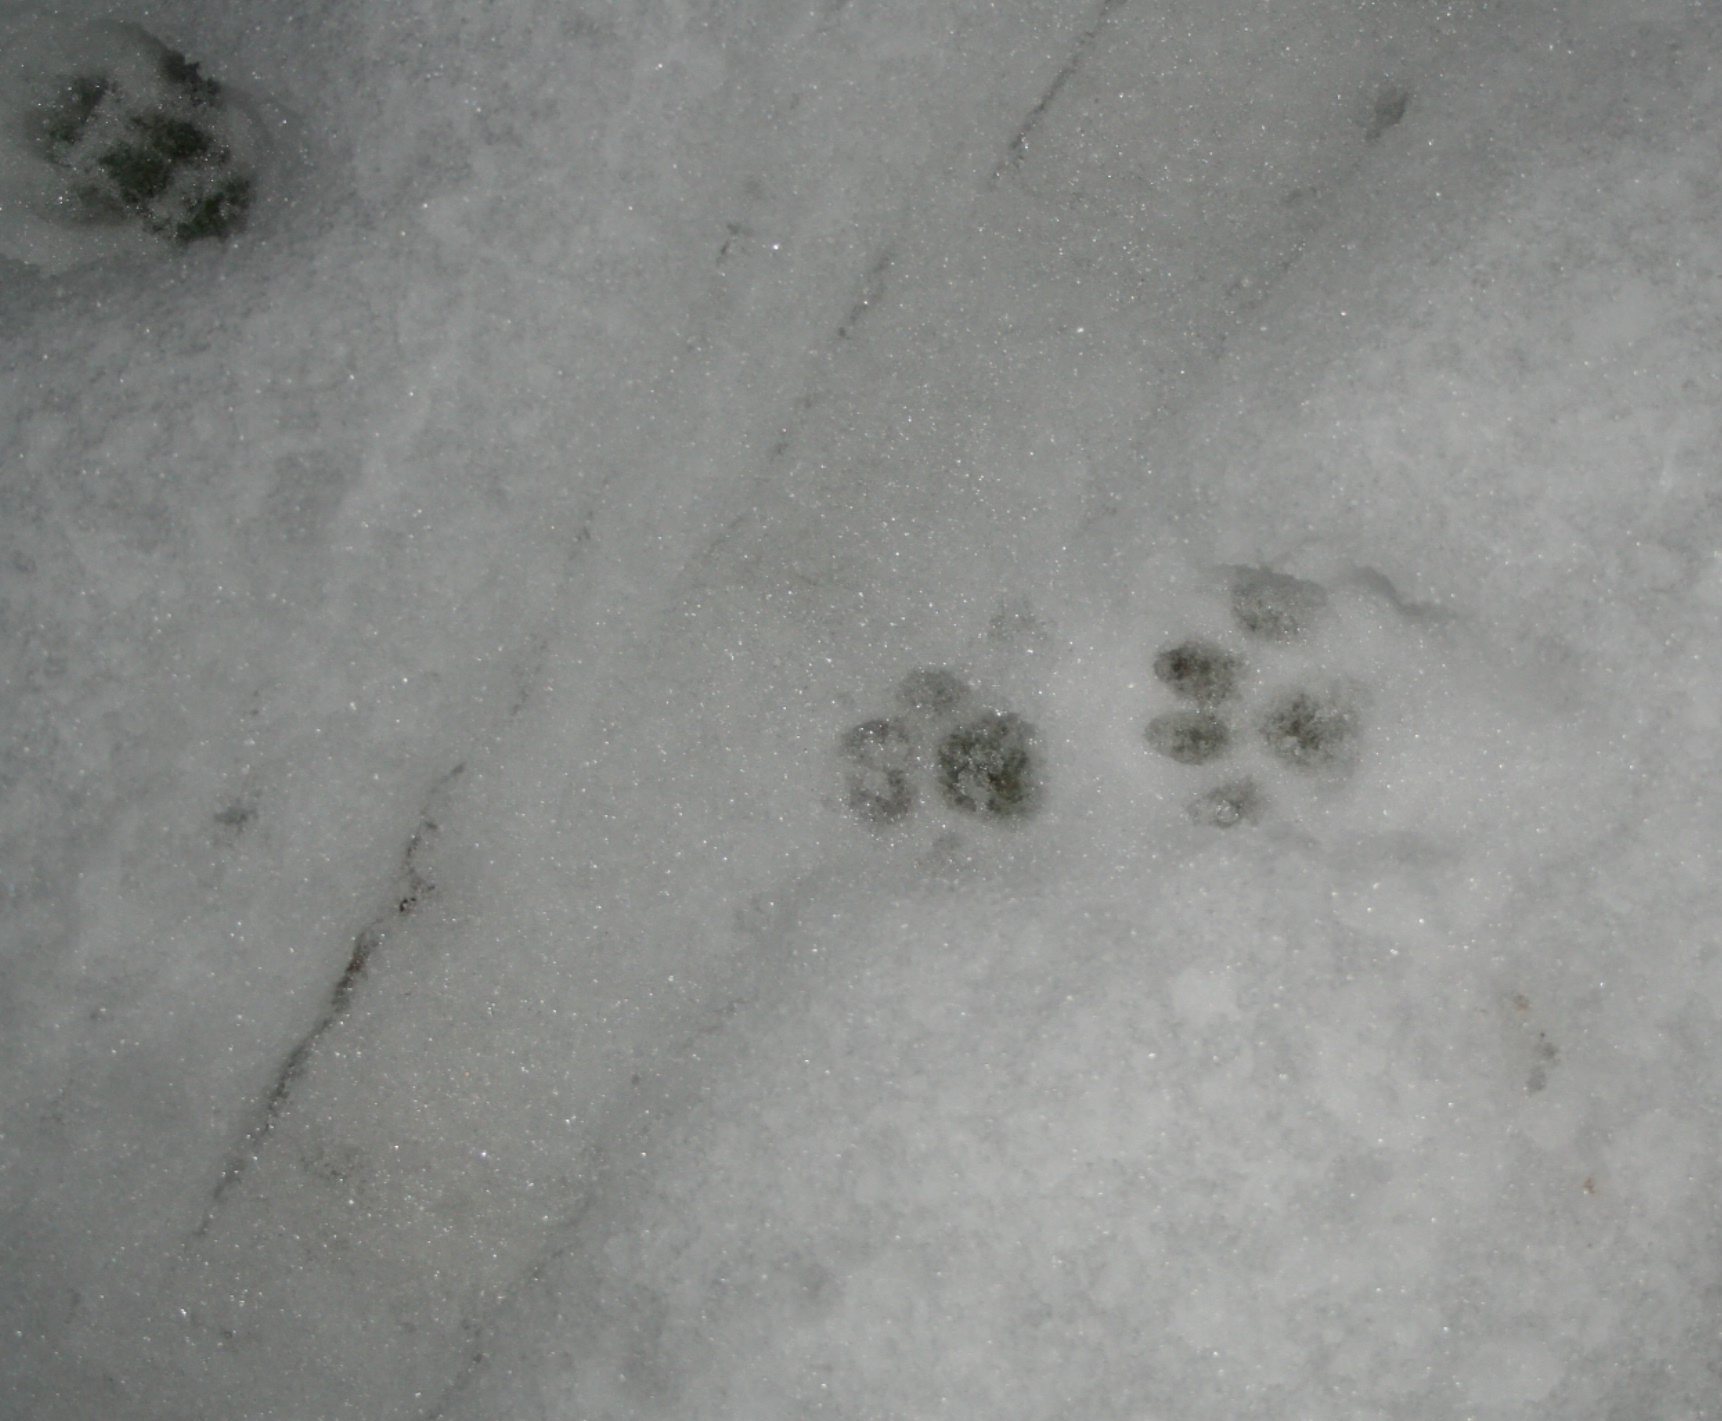 Raccoon Tracks In The Snow Photos